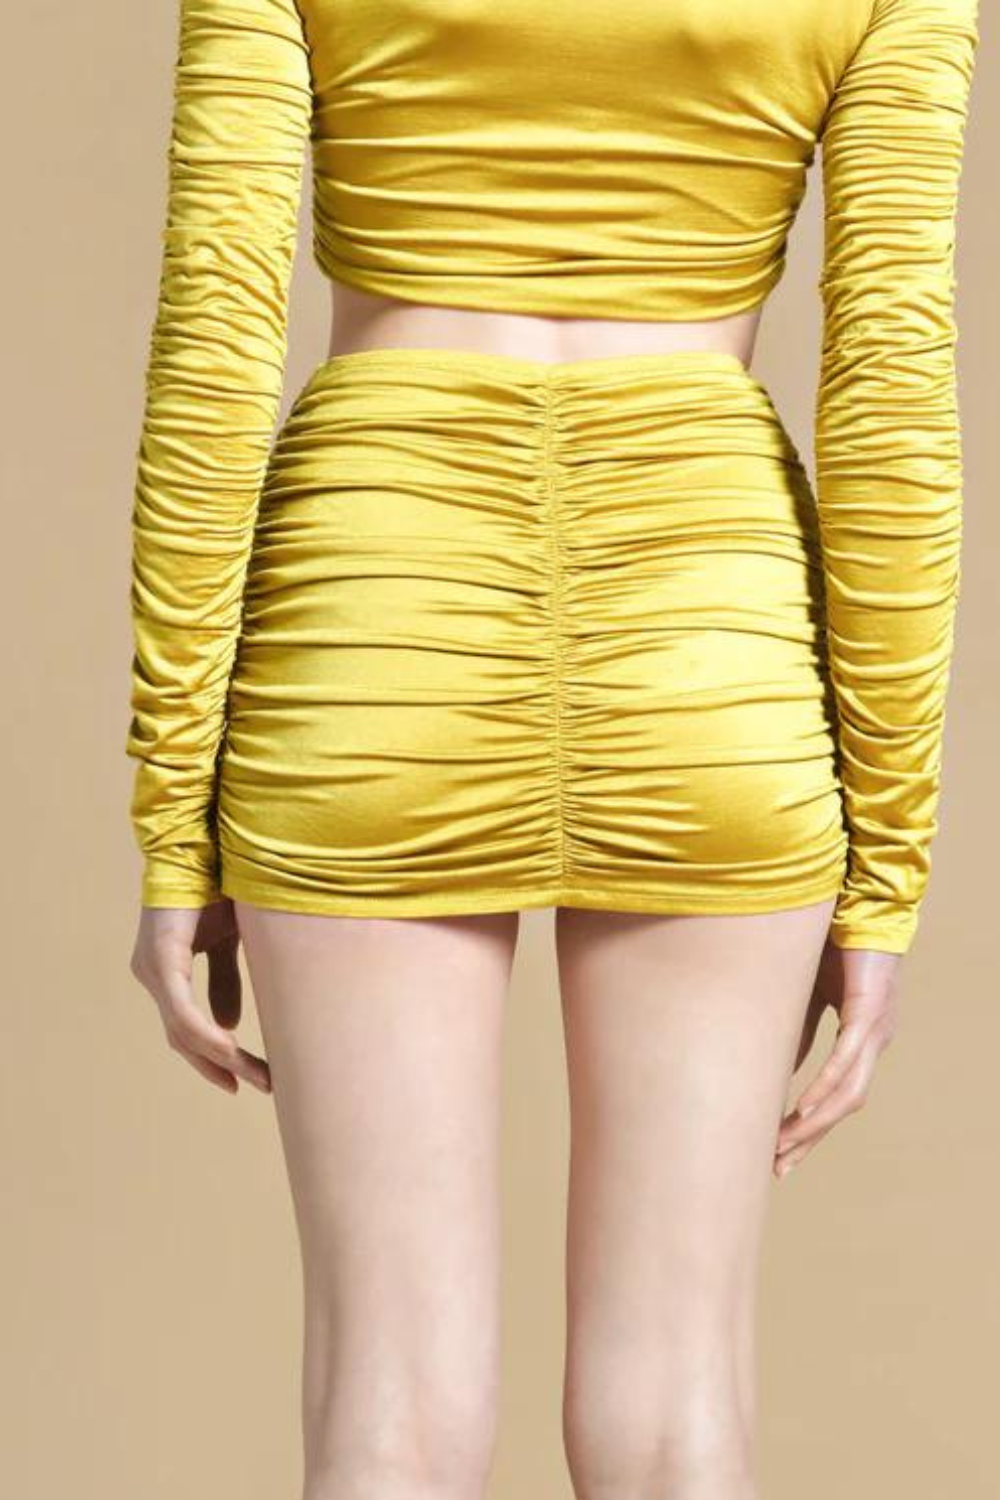 Mini sukně-šortky ve zlaté barvě, velikost S (THE LAW OF LOVE) ЗЮЛ-36-8